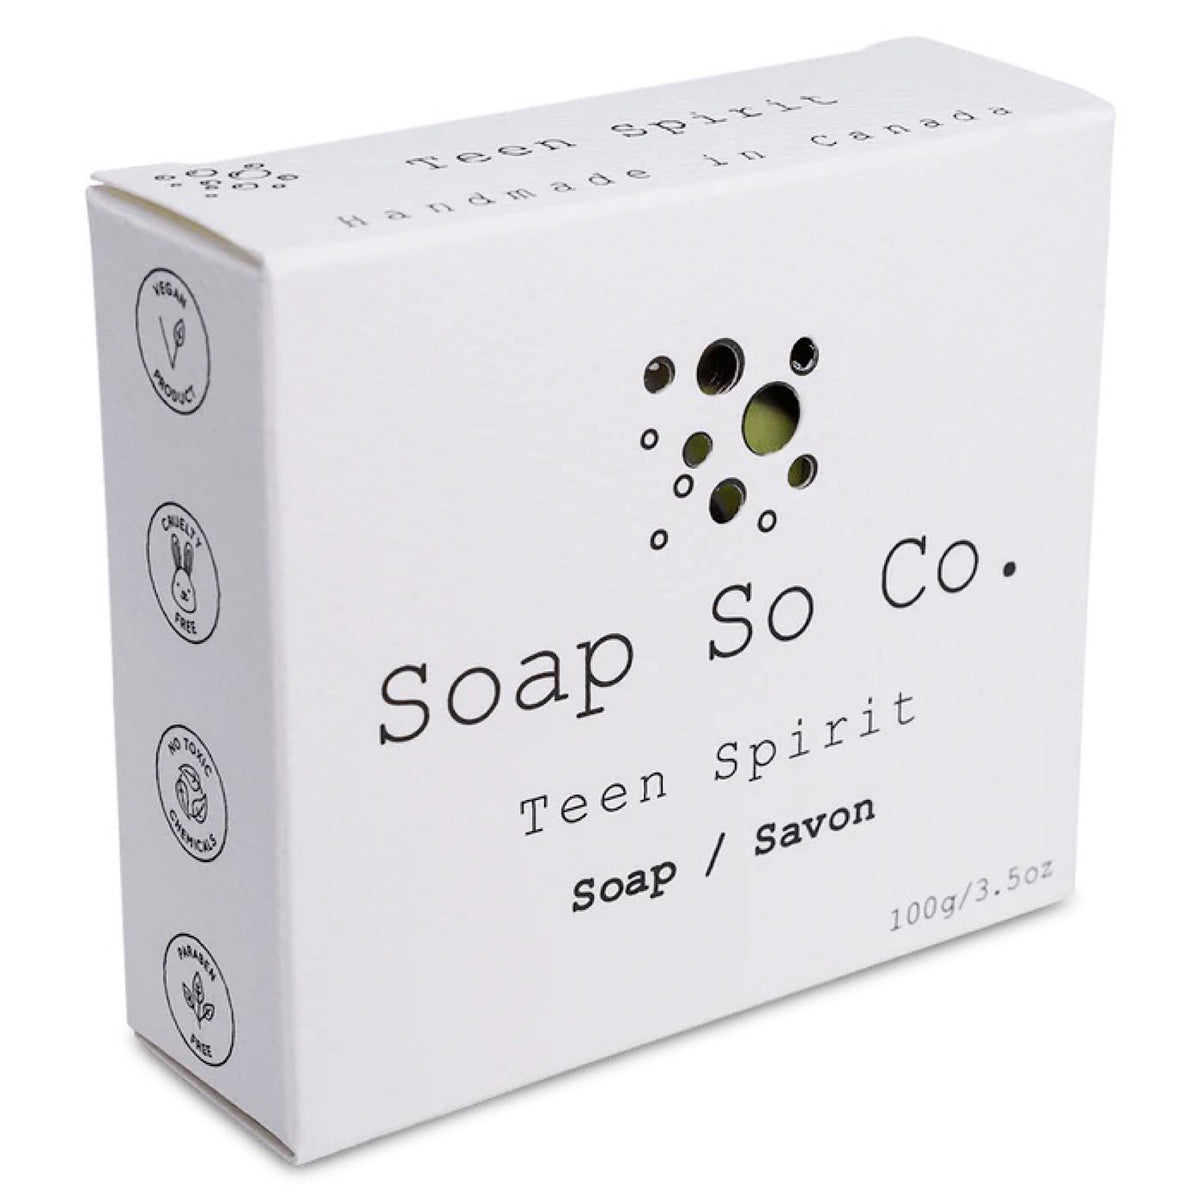 Teen Spirit Bar Soap